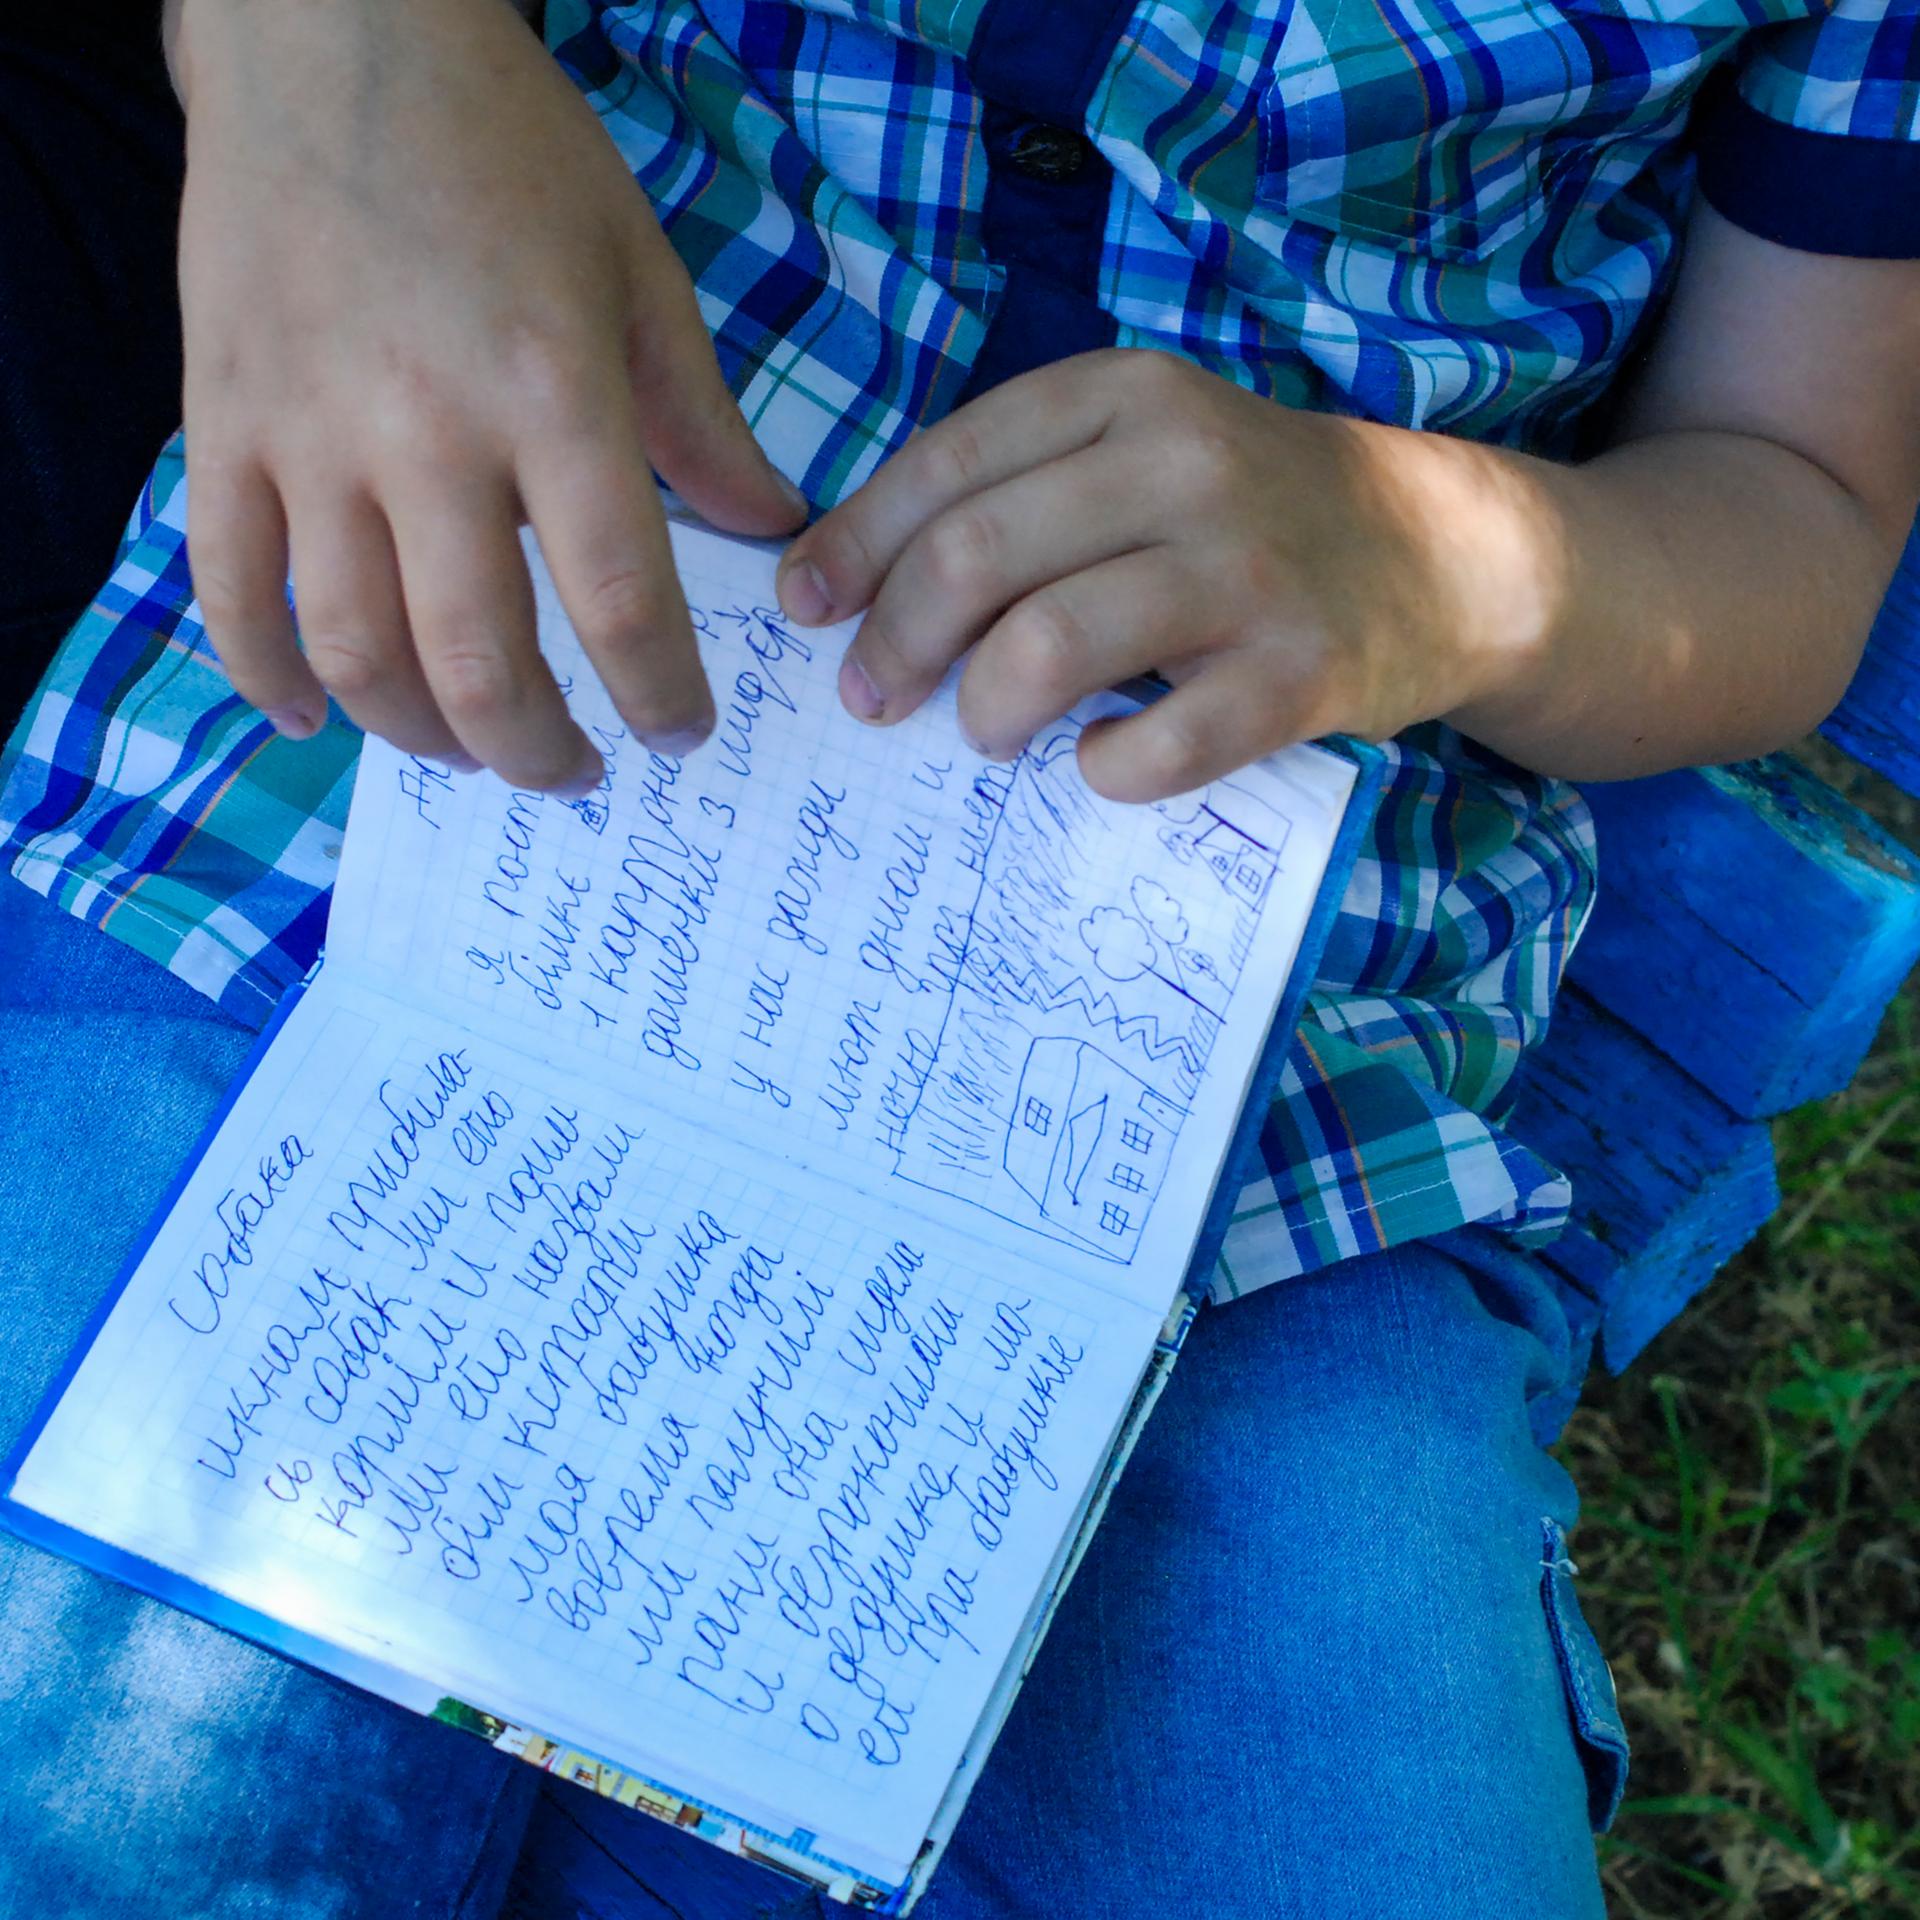 Der 8-Jährige Egor hält ein kleines blaues Buch in seiner Hand. Er hat in Mariupol Tagebuch geführt, als die Stadt blutig umkämpft war. Auf der aufgeschlagenen Seite steht neben einer kleinen Zeichnung: "Ich habe gut geschlafen, habe gelächelt und 25 Seiten gelesen. Ausserdem ist mein Grossvater gestorben am 26.April". Zaporizhzhia, 3.Juni 2022.